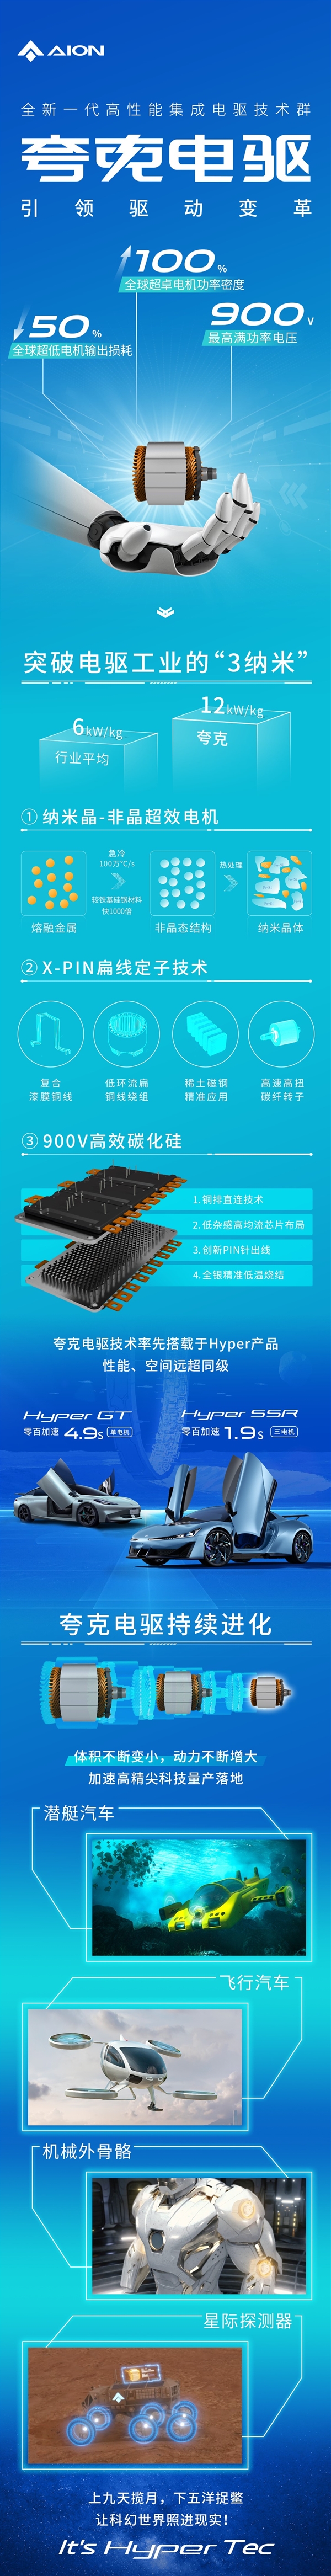 广汽埃安发布全新“夸克电驱”：巴掌大的电机马力超V8